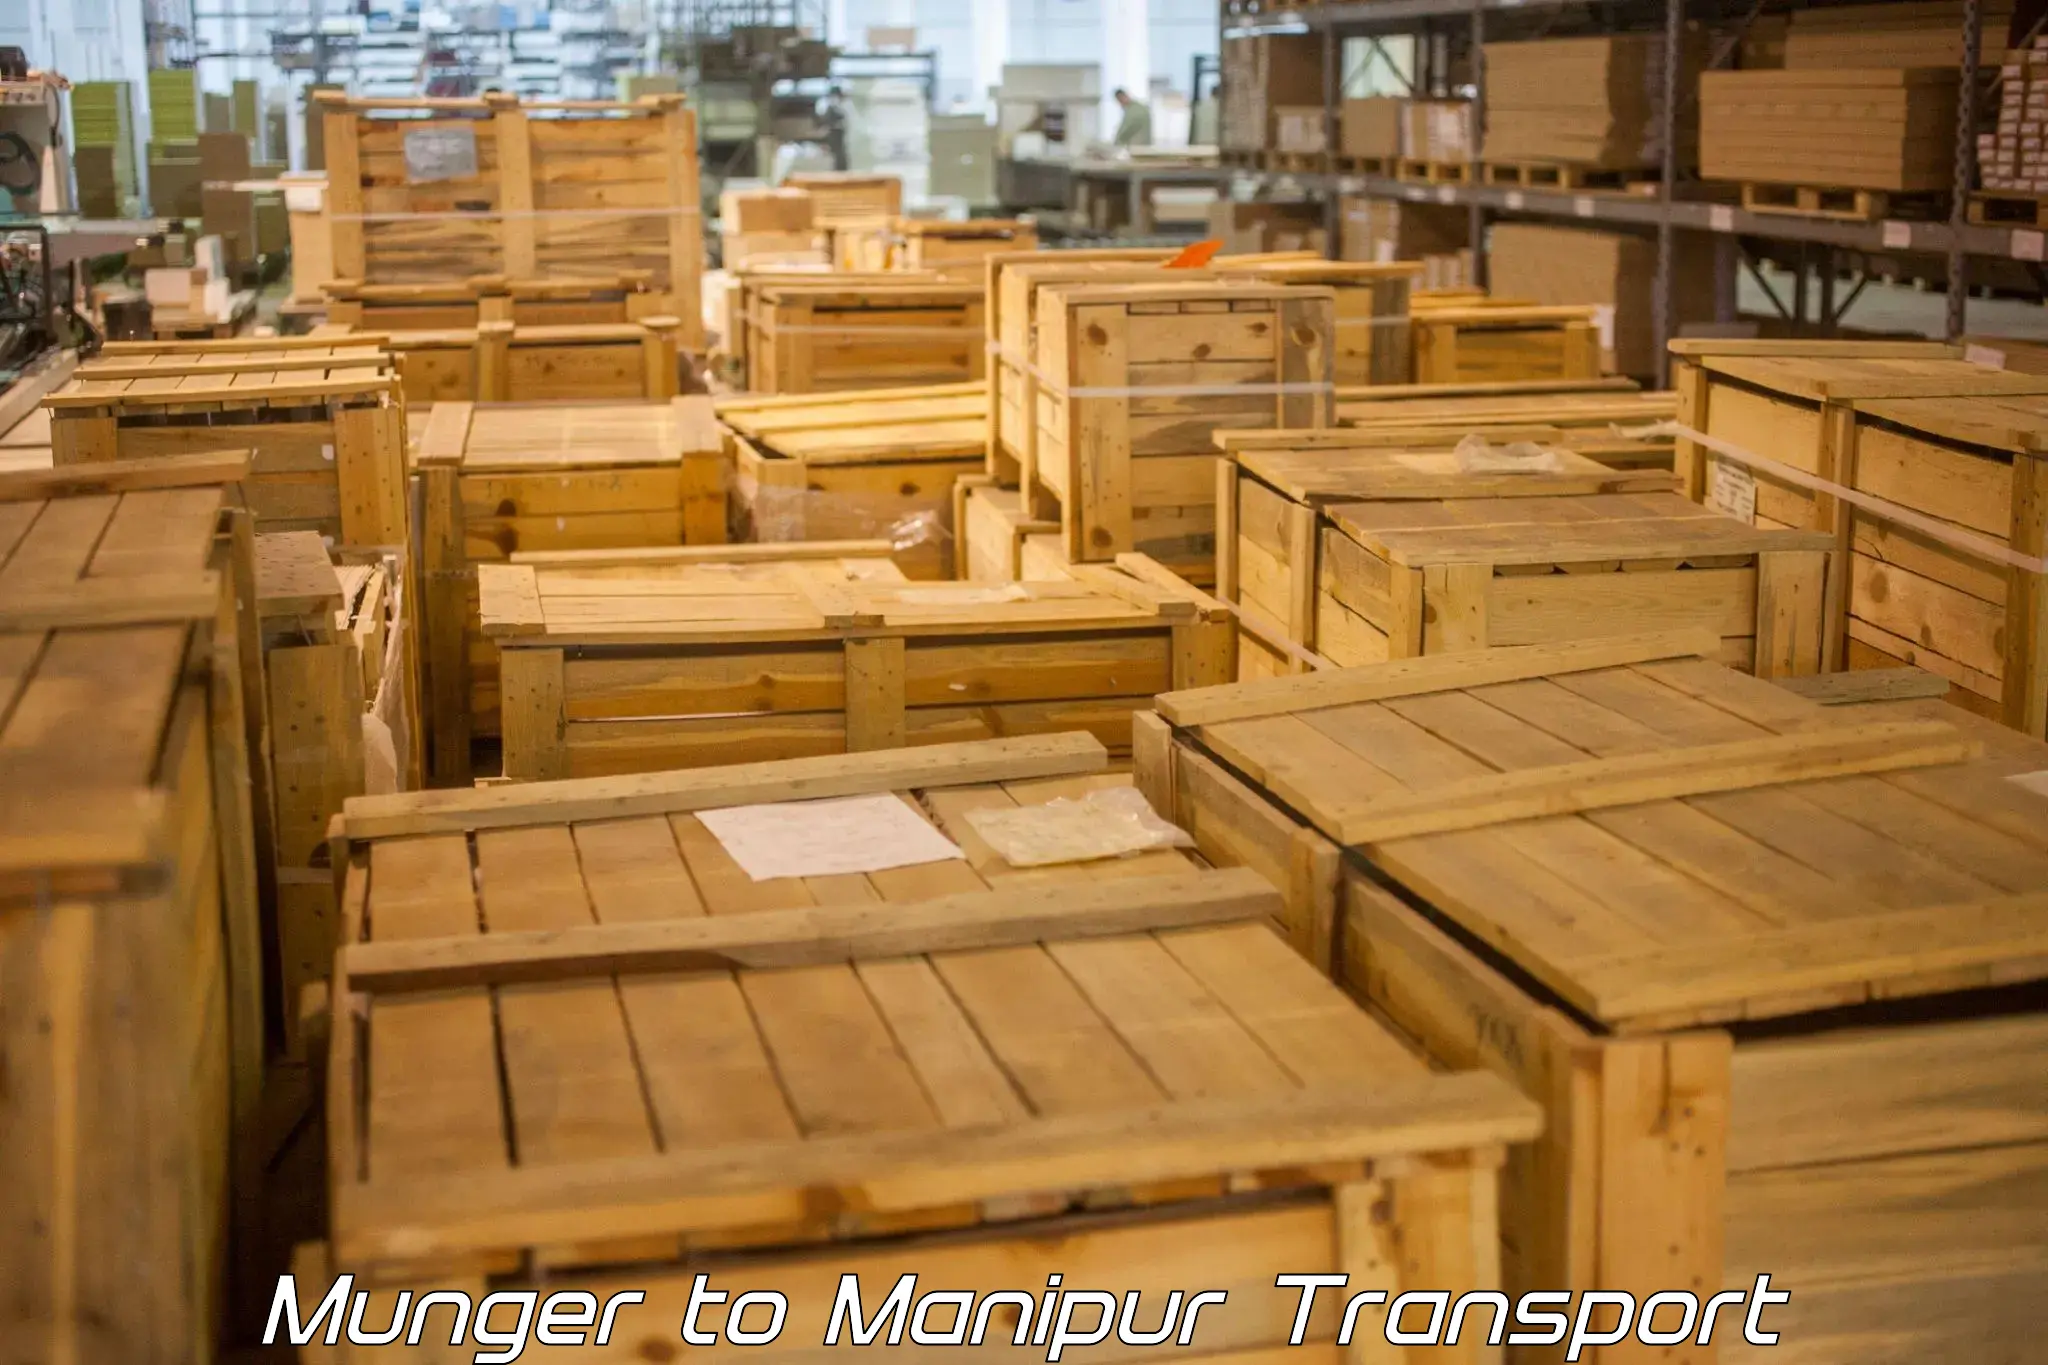 Parcel transport services Munger to Chandel